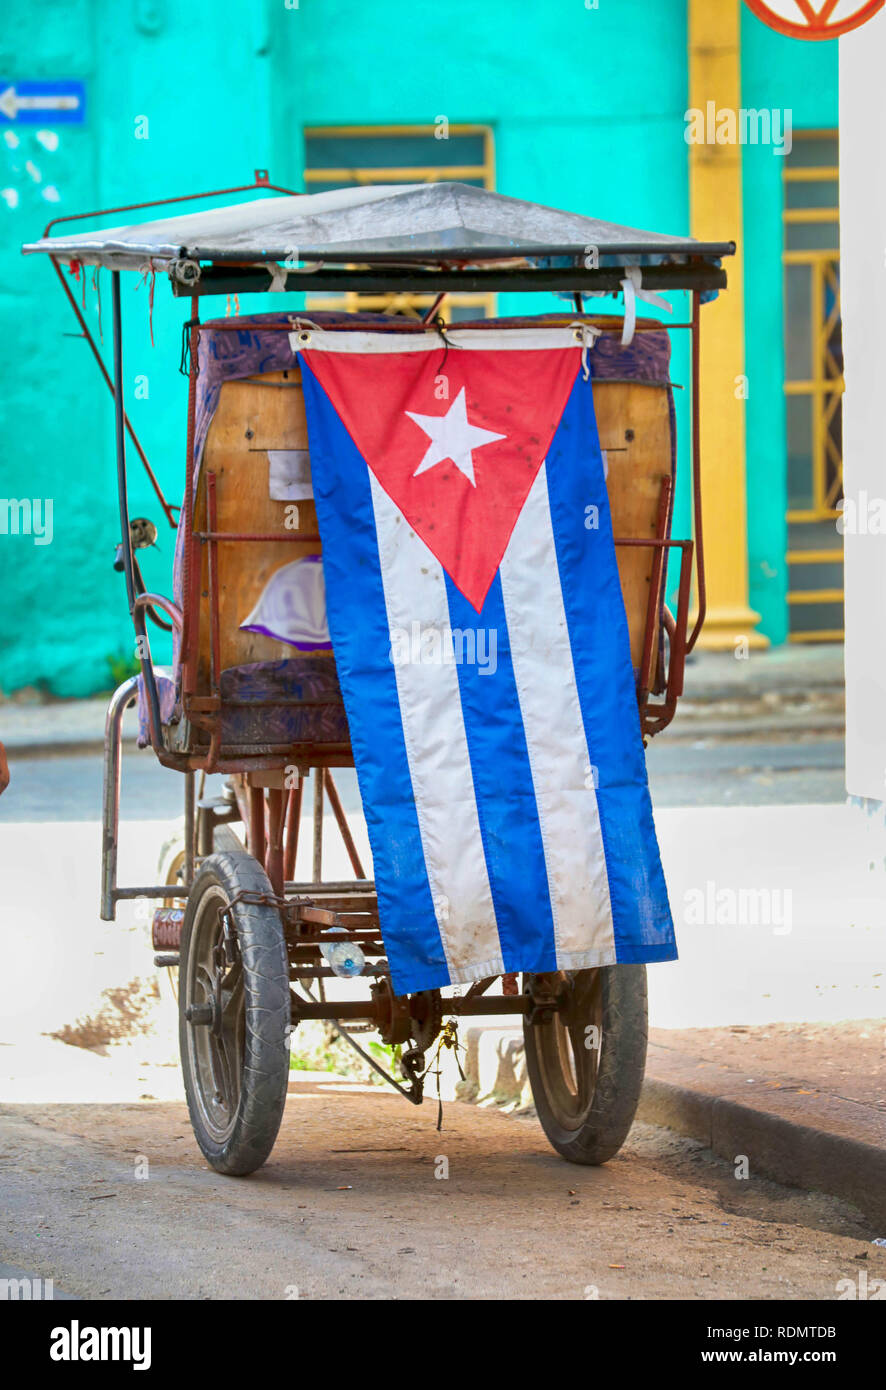 Kubanische Zyklus Taxi mit kubanischen Flagge, Zyklus mit dem Taxi in die  Altstadt von Havanna, Kuba. Dreirad gemacht in ein Taxi. Billig Transport  fahrrad für Einheimische und Touristen in Havanna Stockfotografie -